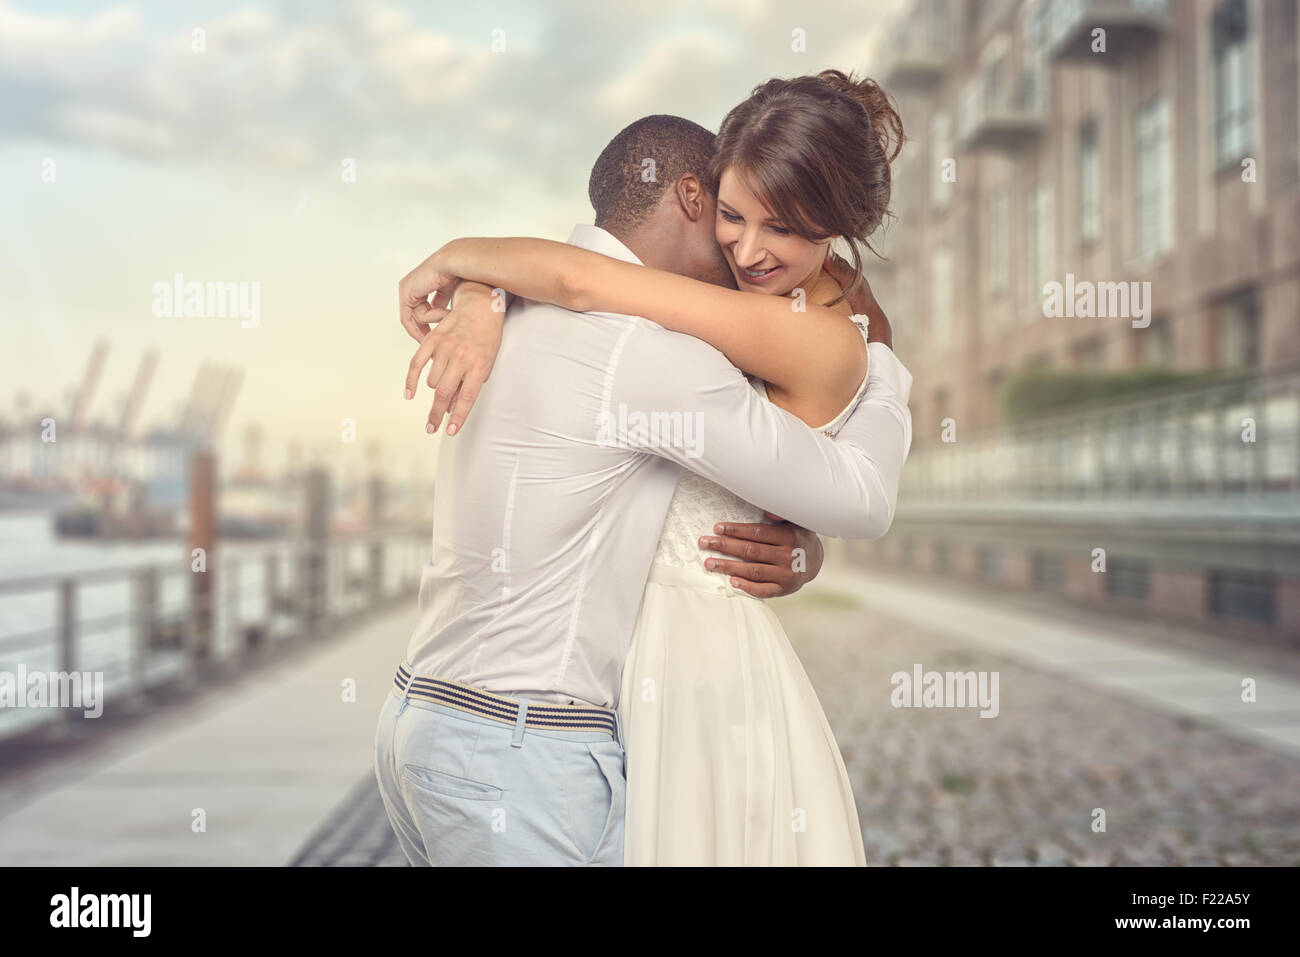 Froh, dass romantische junge Paar teilen einen besonderen bewegender Moment umarmen einander, wie sie ihre Liebe und Zuneigung zeigen, Seitenansicht th Stockfoto